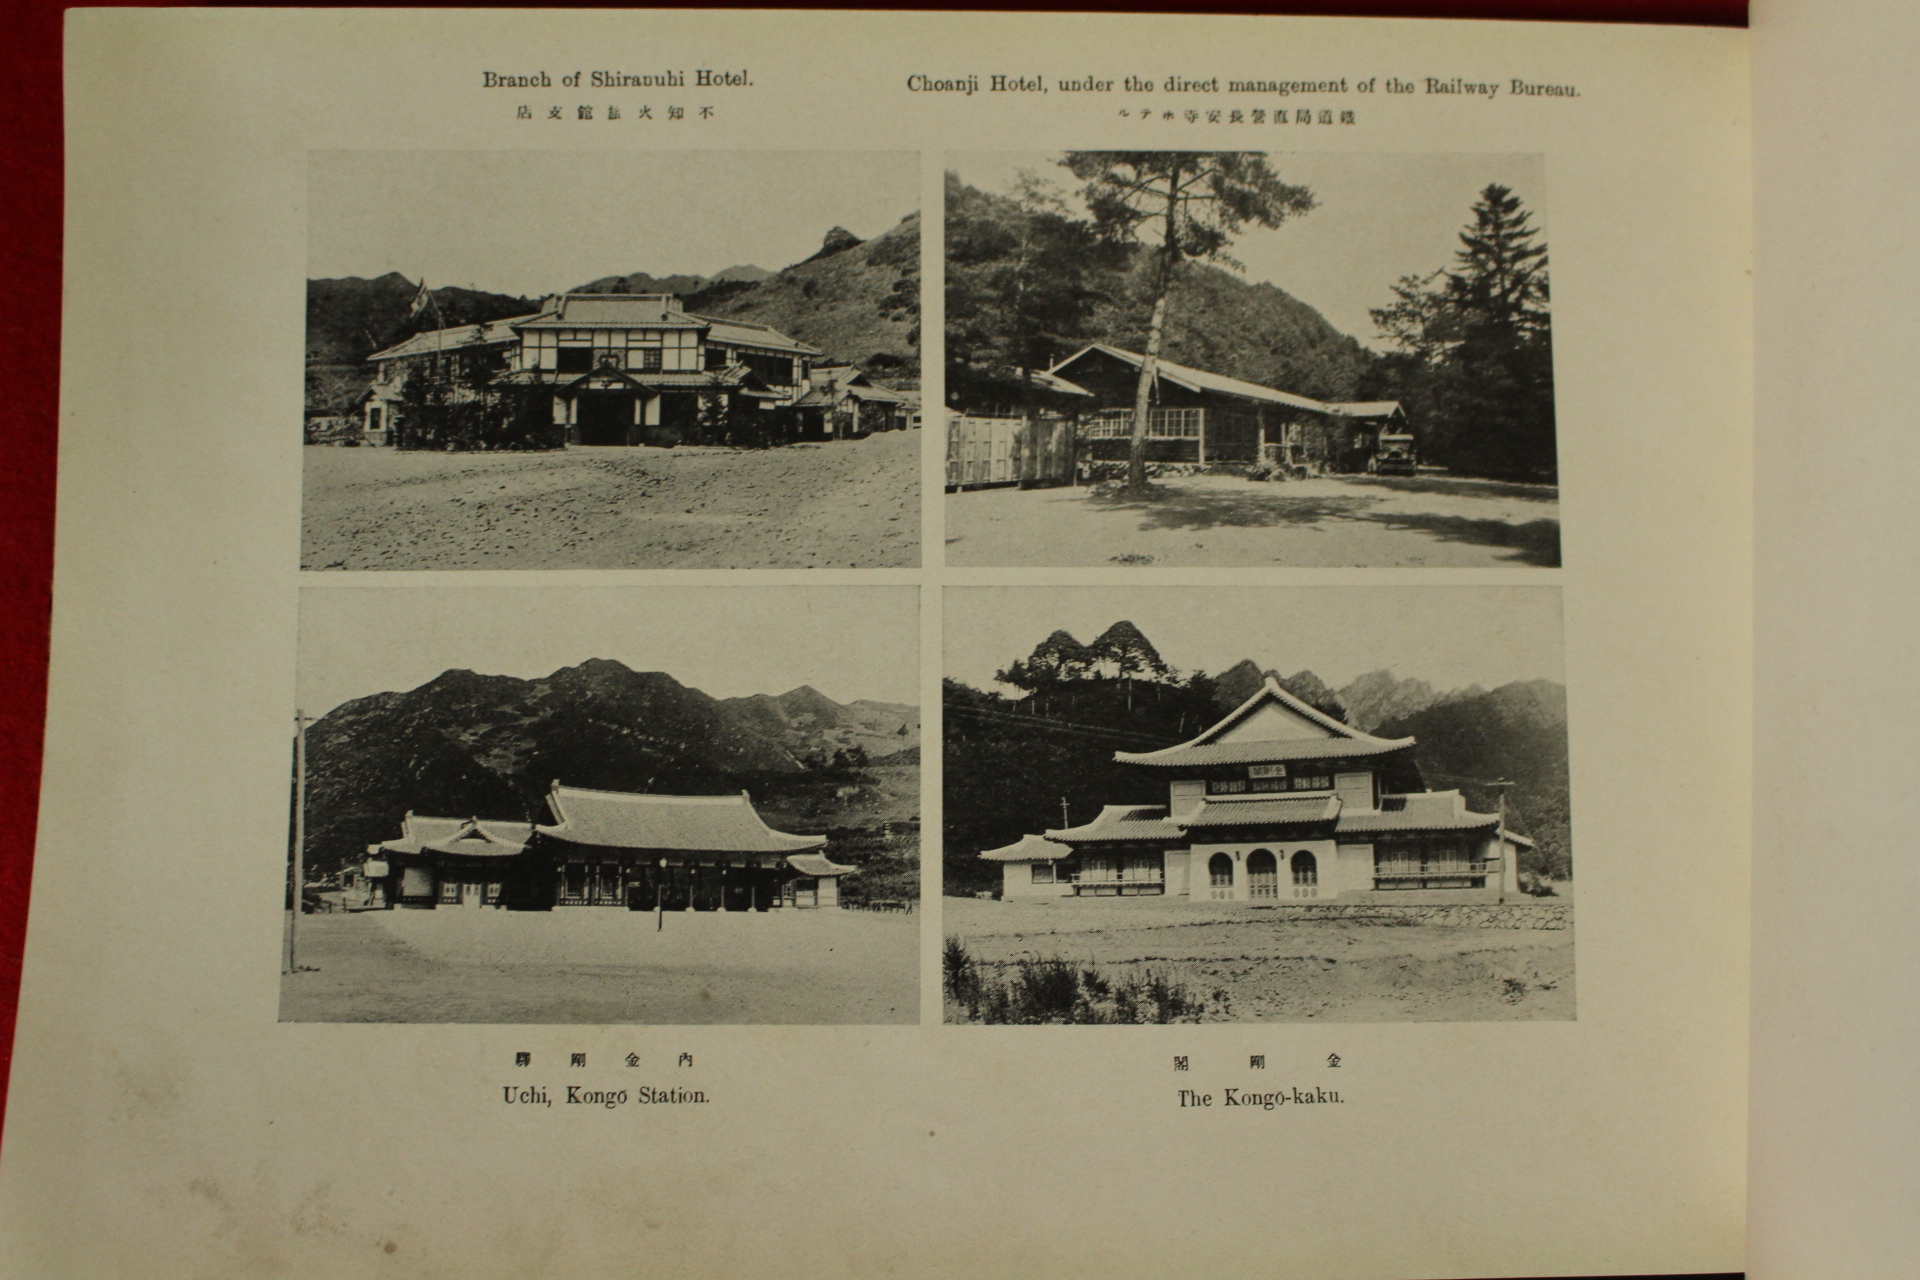 1932년 경성간행 천하무비만이천봉 조선금강산(朝鮮金剛山)